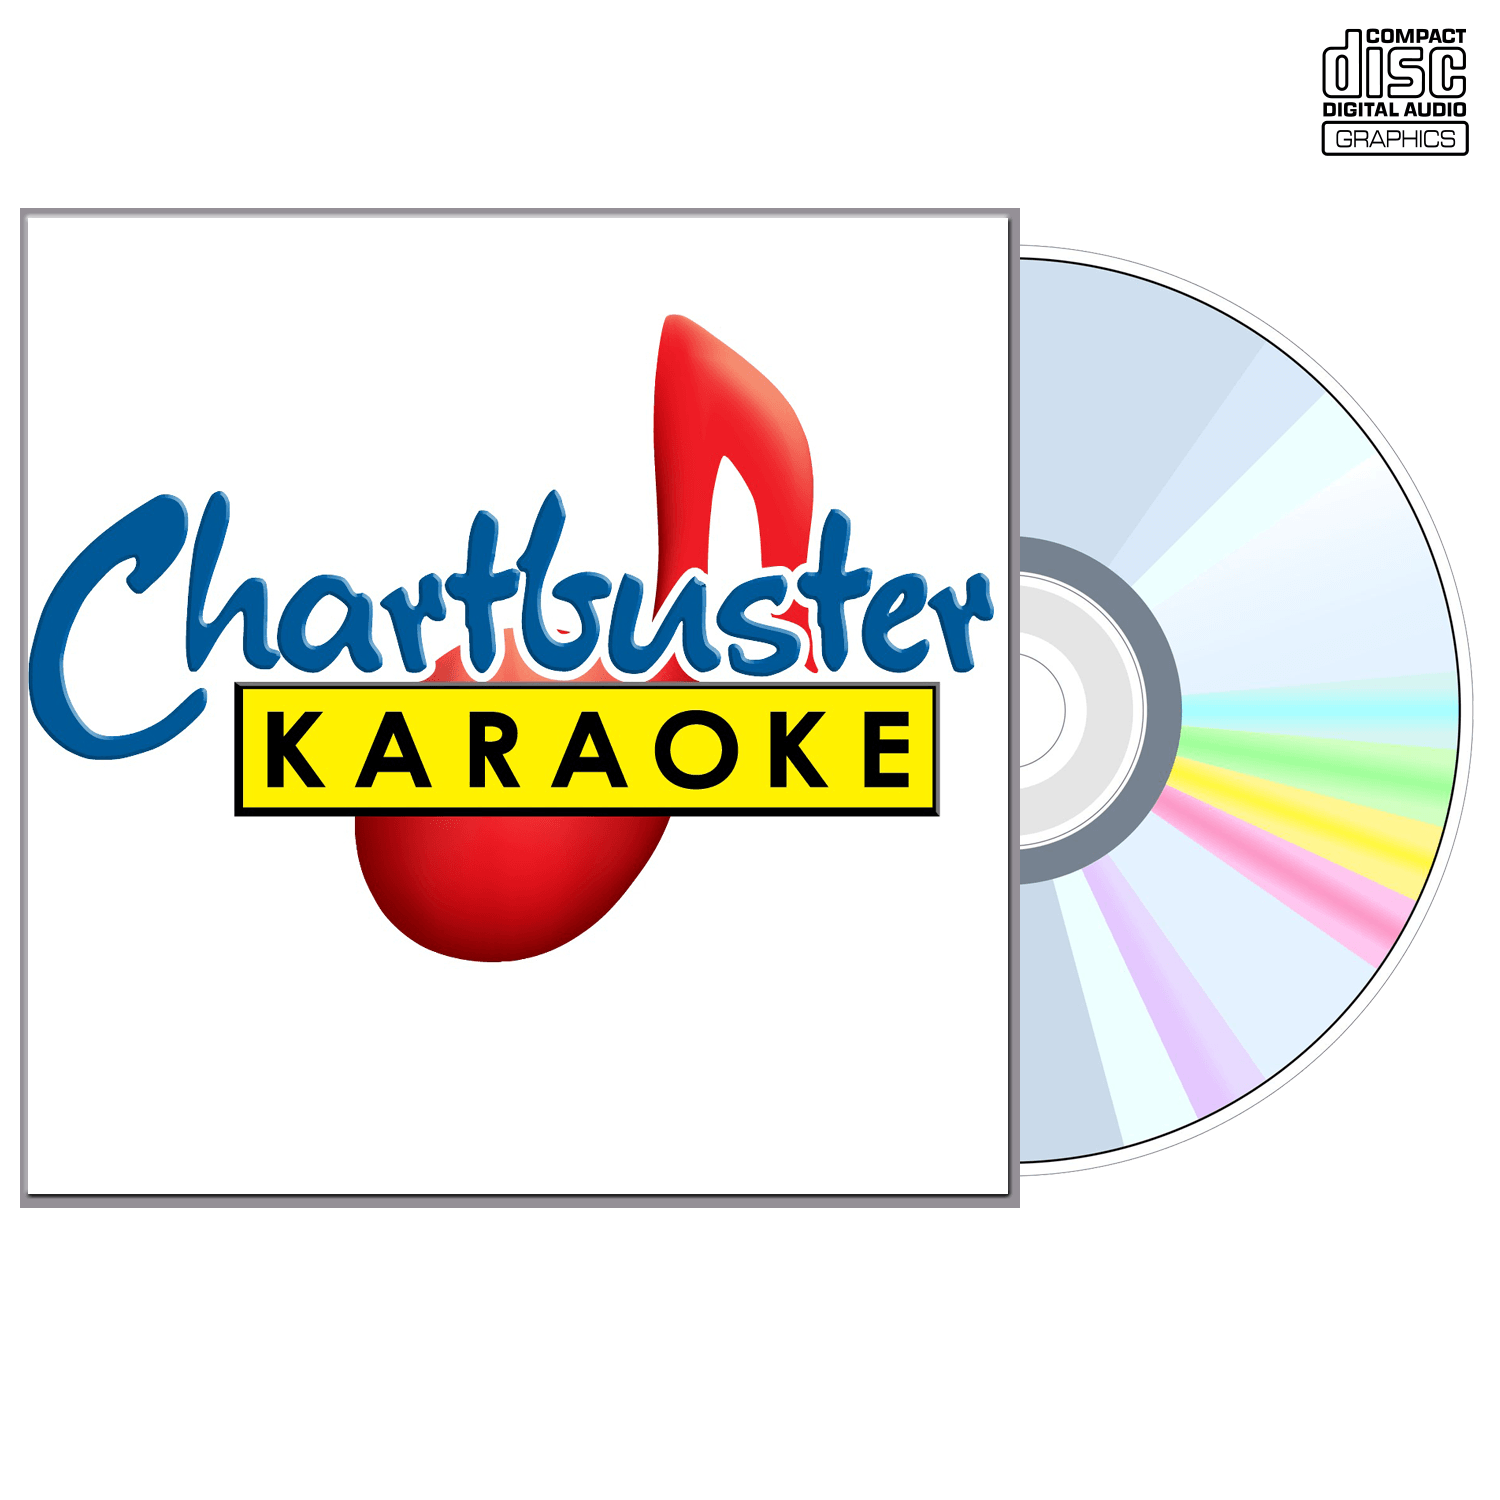 Suzy Boguss - CD+G - Chartbuster Karaoke - Karaoke Home Entertainment